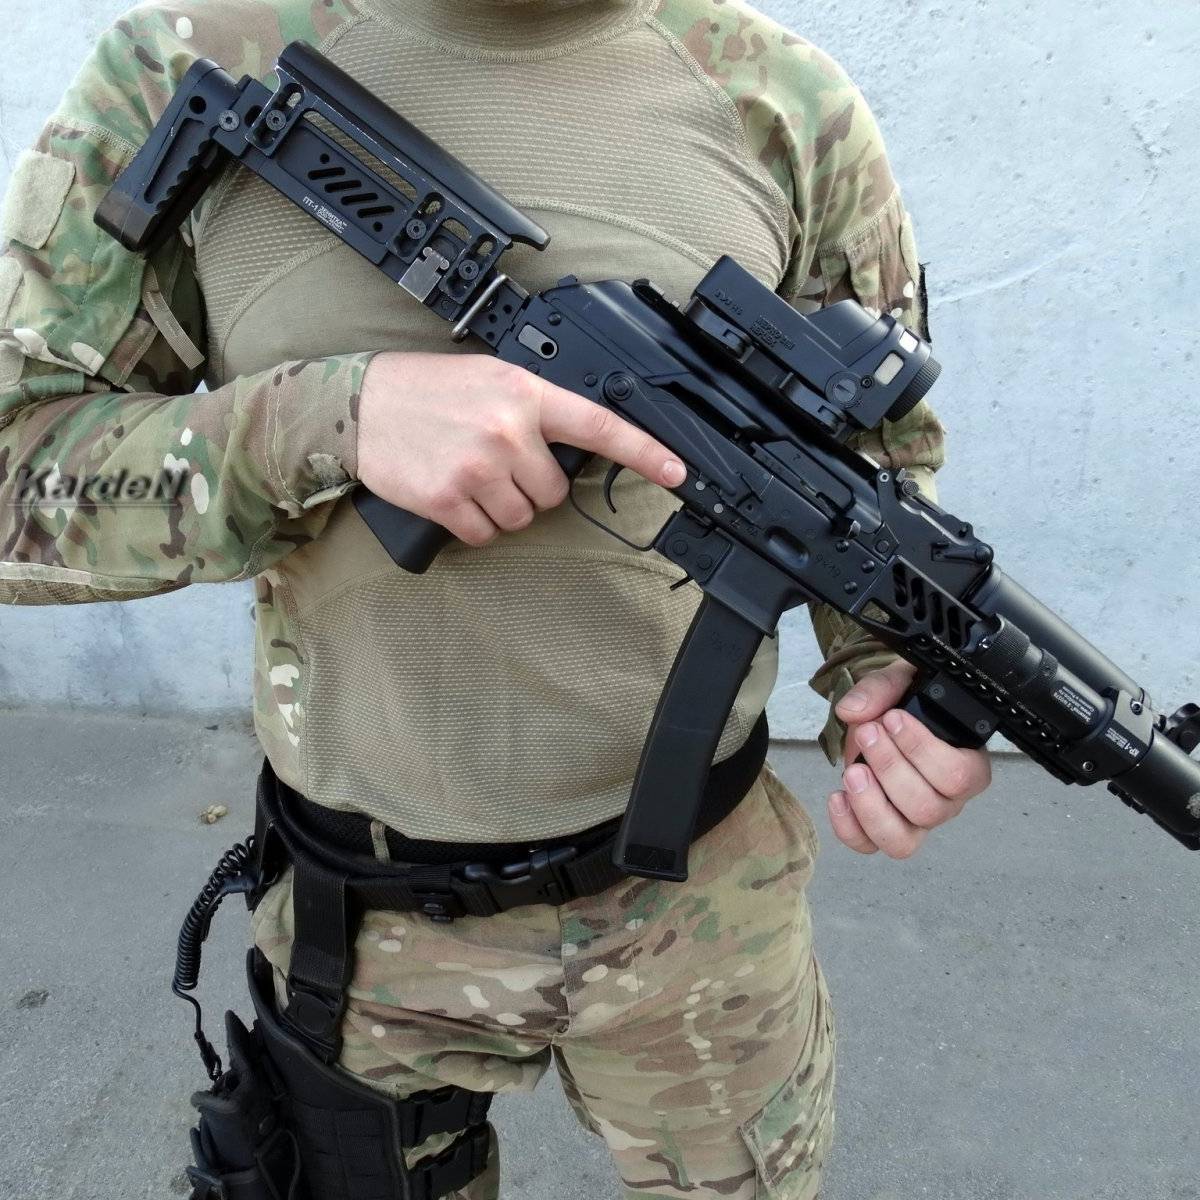 Пистолет-пулемет "Витязь" ПП-19-01